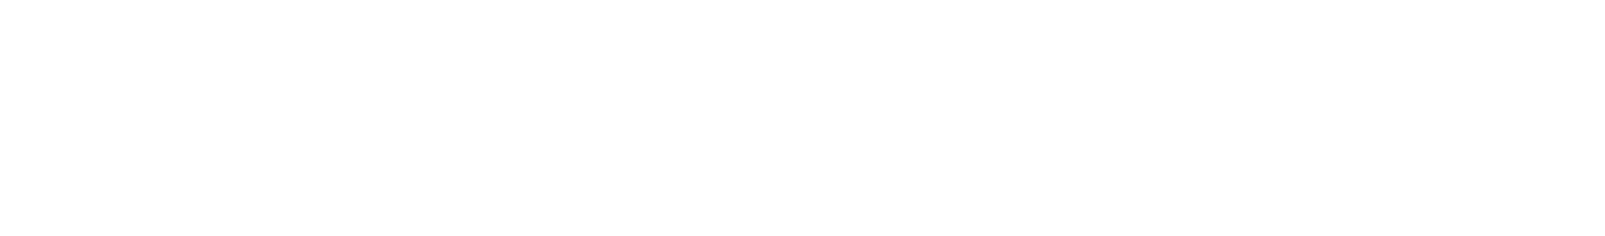 Endeavor Group logo grand pour les fonds sombres (PNG transparent)